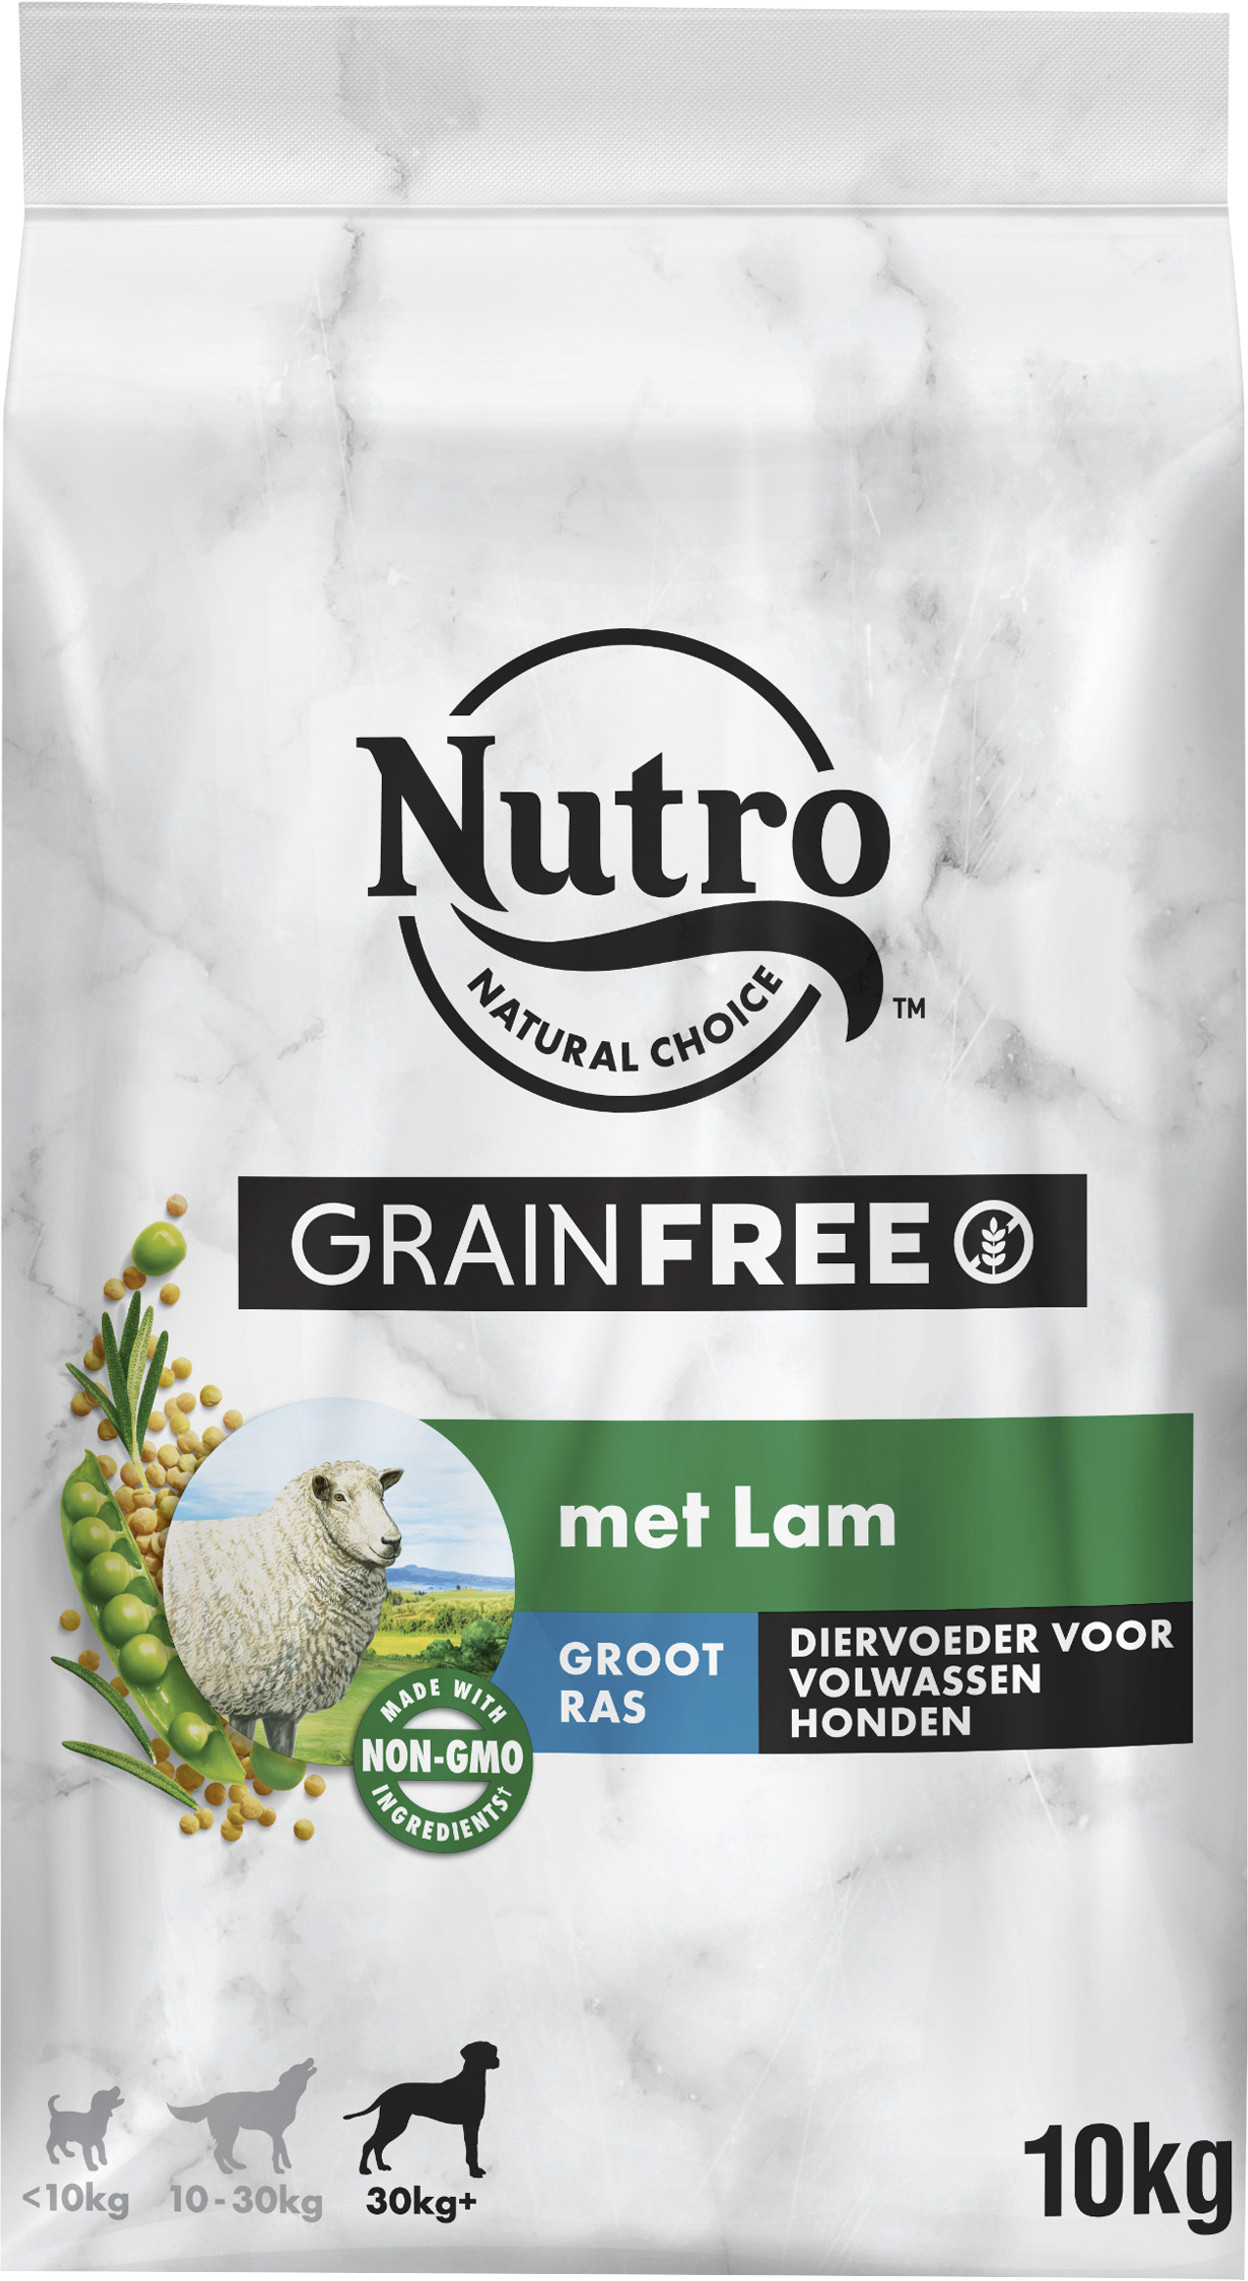 Afbeelding Nutro Grain Free Adult Large met lam hondenvoer 10 kg door Brekz.nl